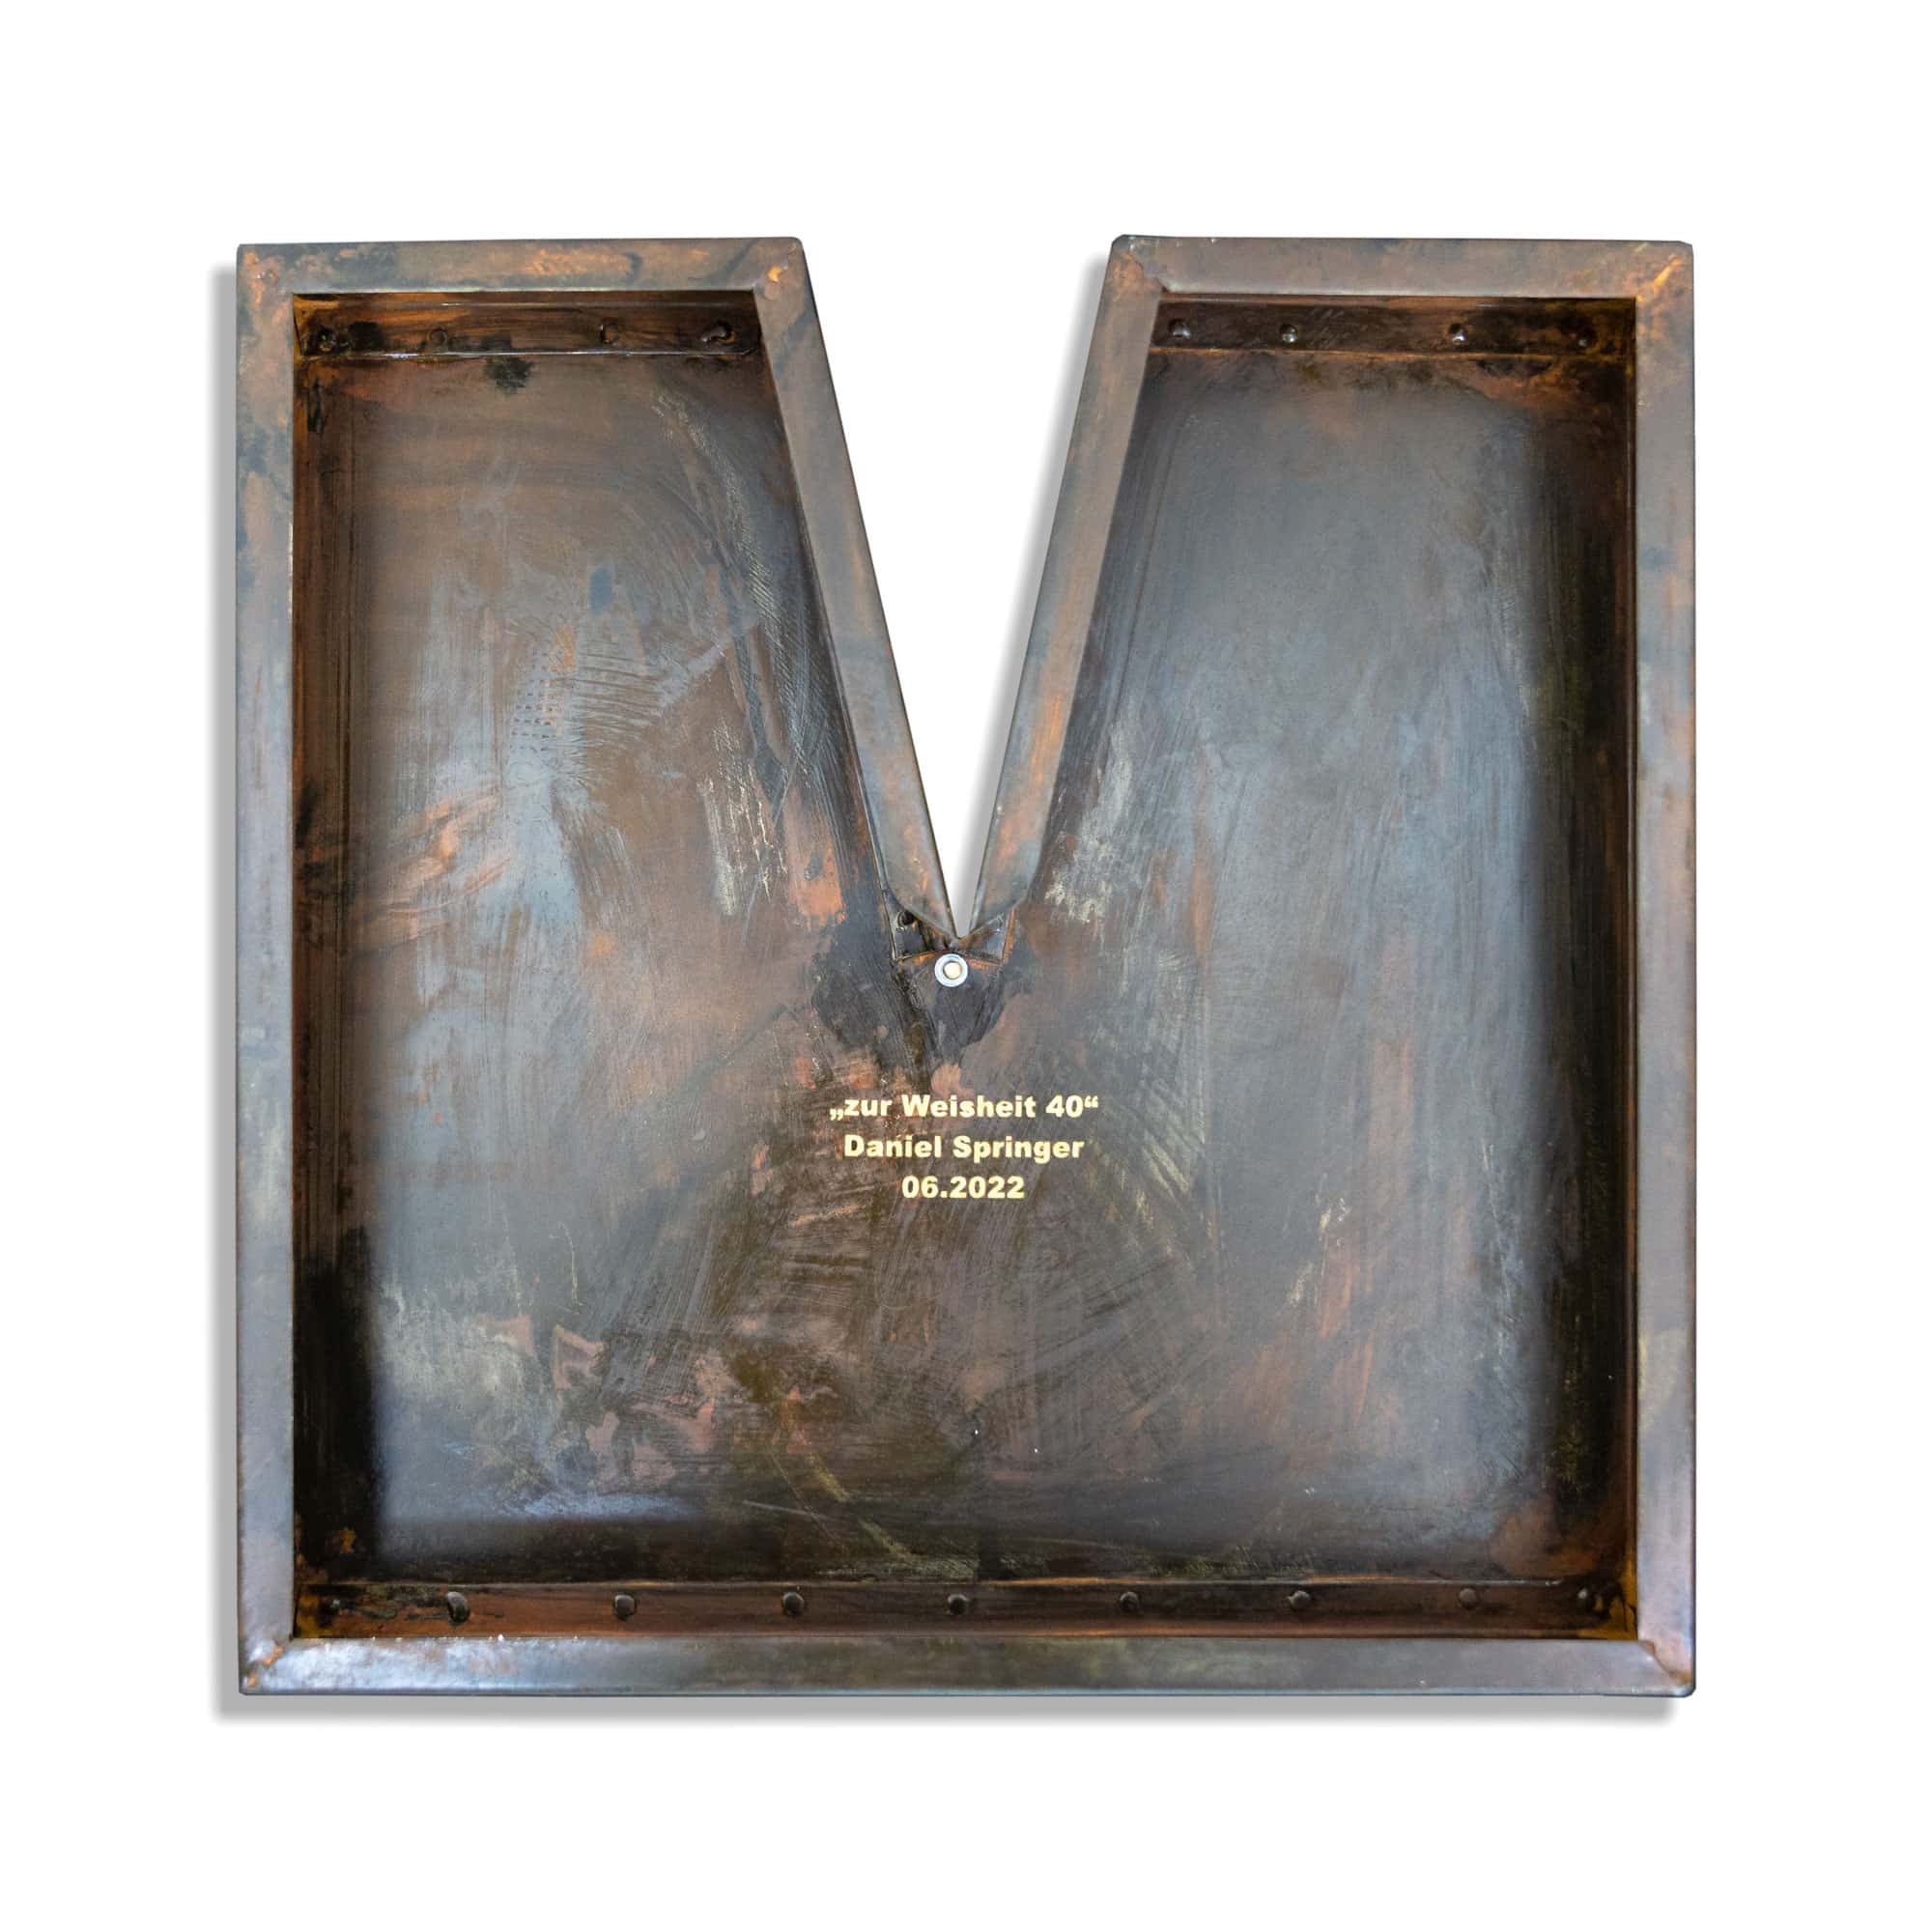 Kunstwerk mit dem Namen „zur Weisheit“. Kugel 24 Karat vergoldet Rahmen Metall, Oberfläche Metall brüniert. Vom Stahlbildhauer im Atelier Daniel Springer